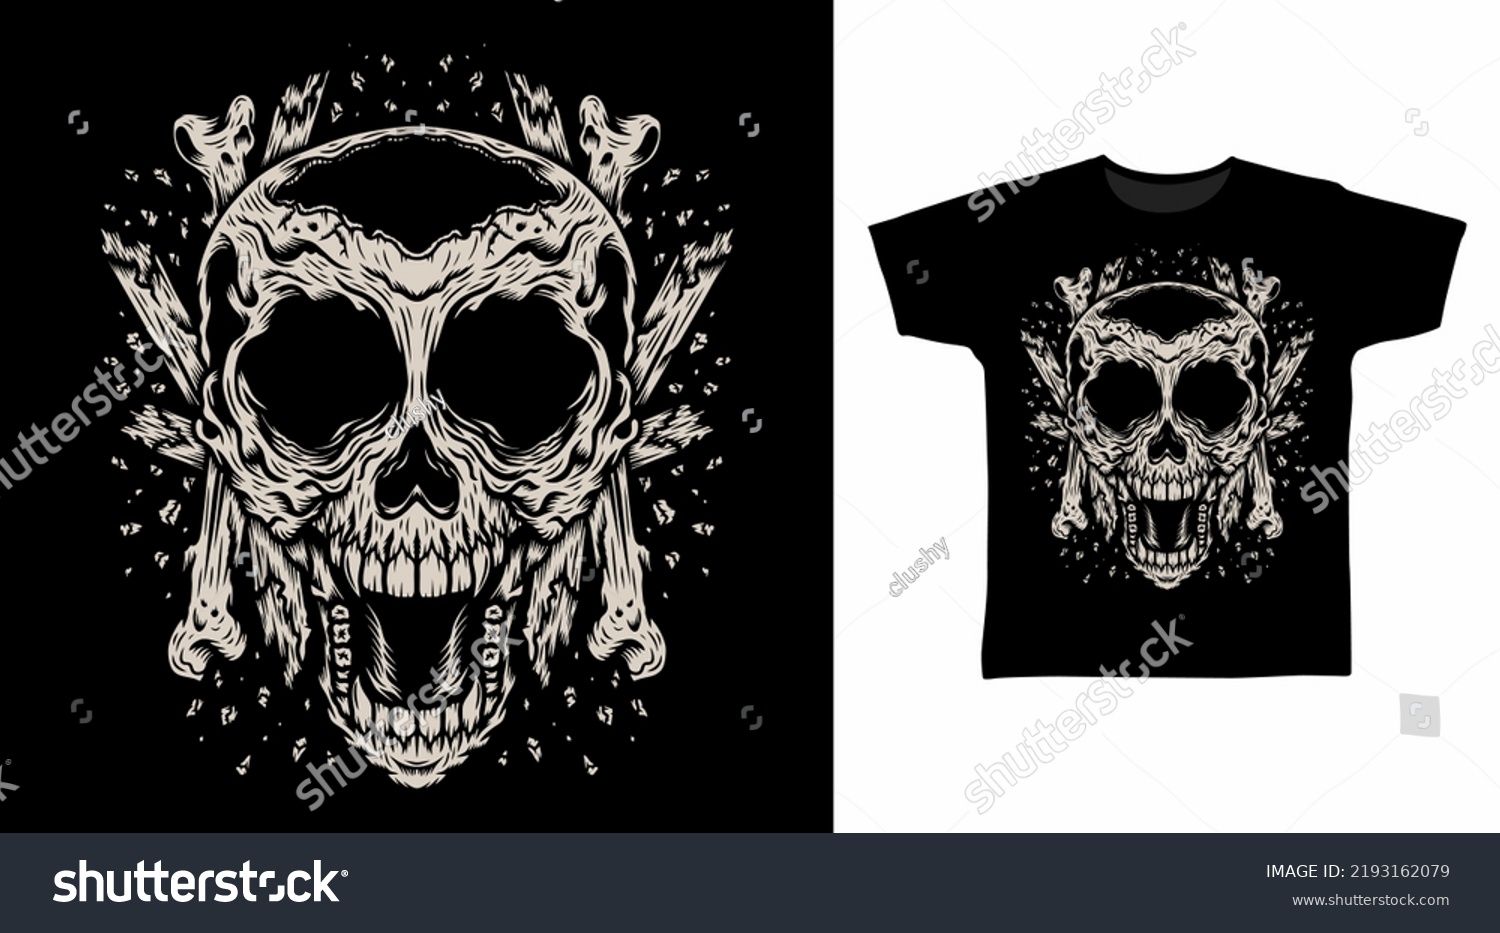 Skeleton Broken Tshirt Design Concepts Stock Vector (Royalty Free ...